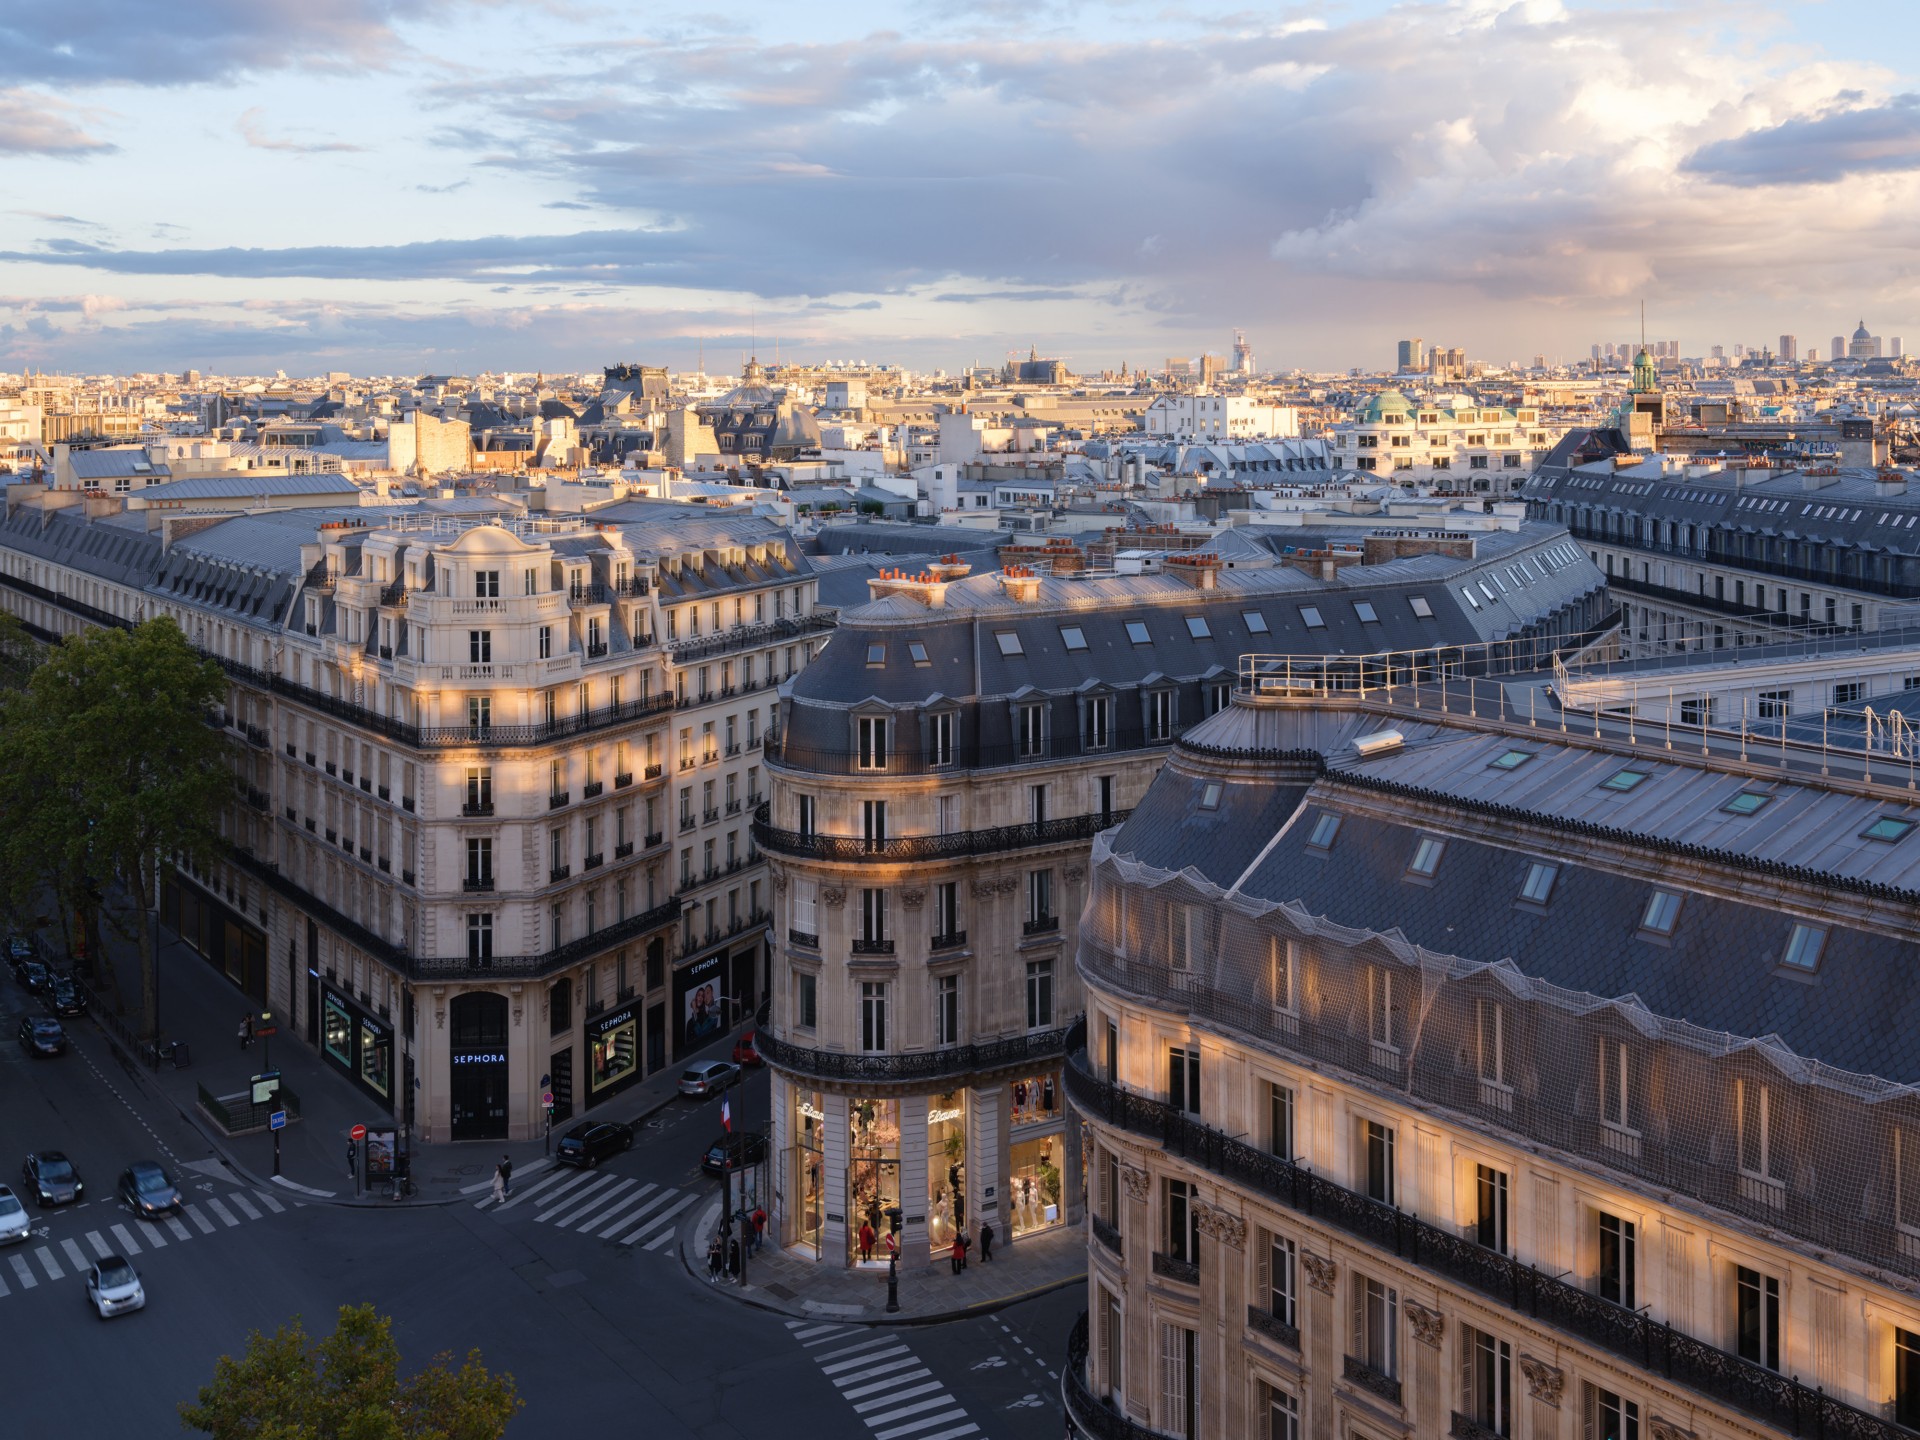 MVRDV designs the new Etam flagship store in Paris